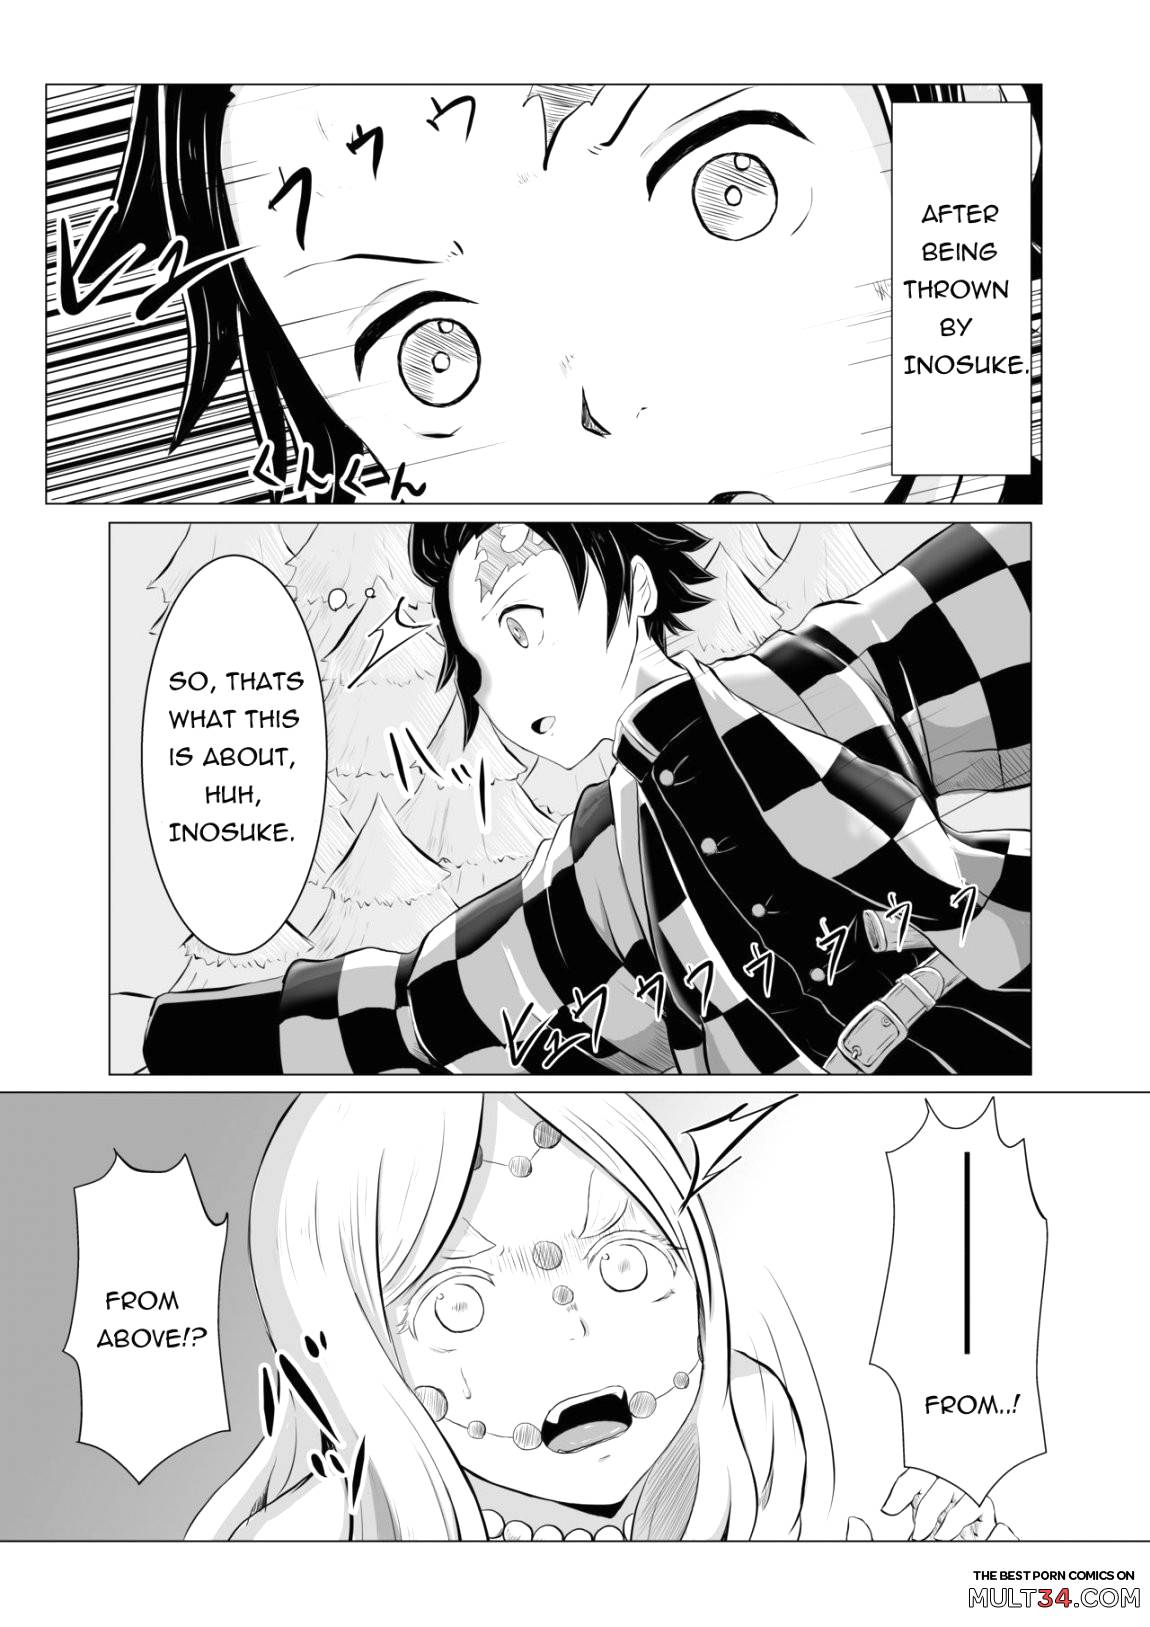 Hinokami sex page 2